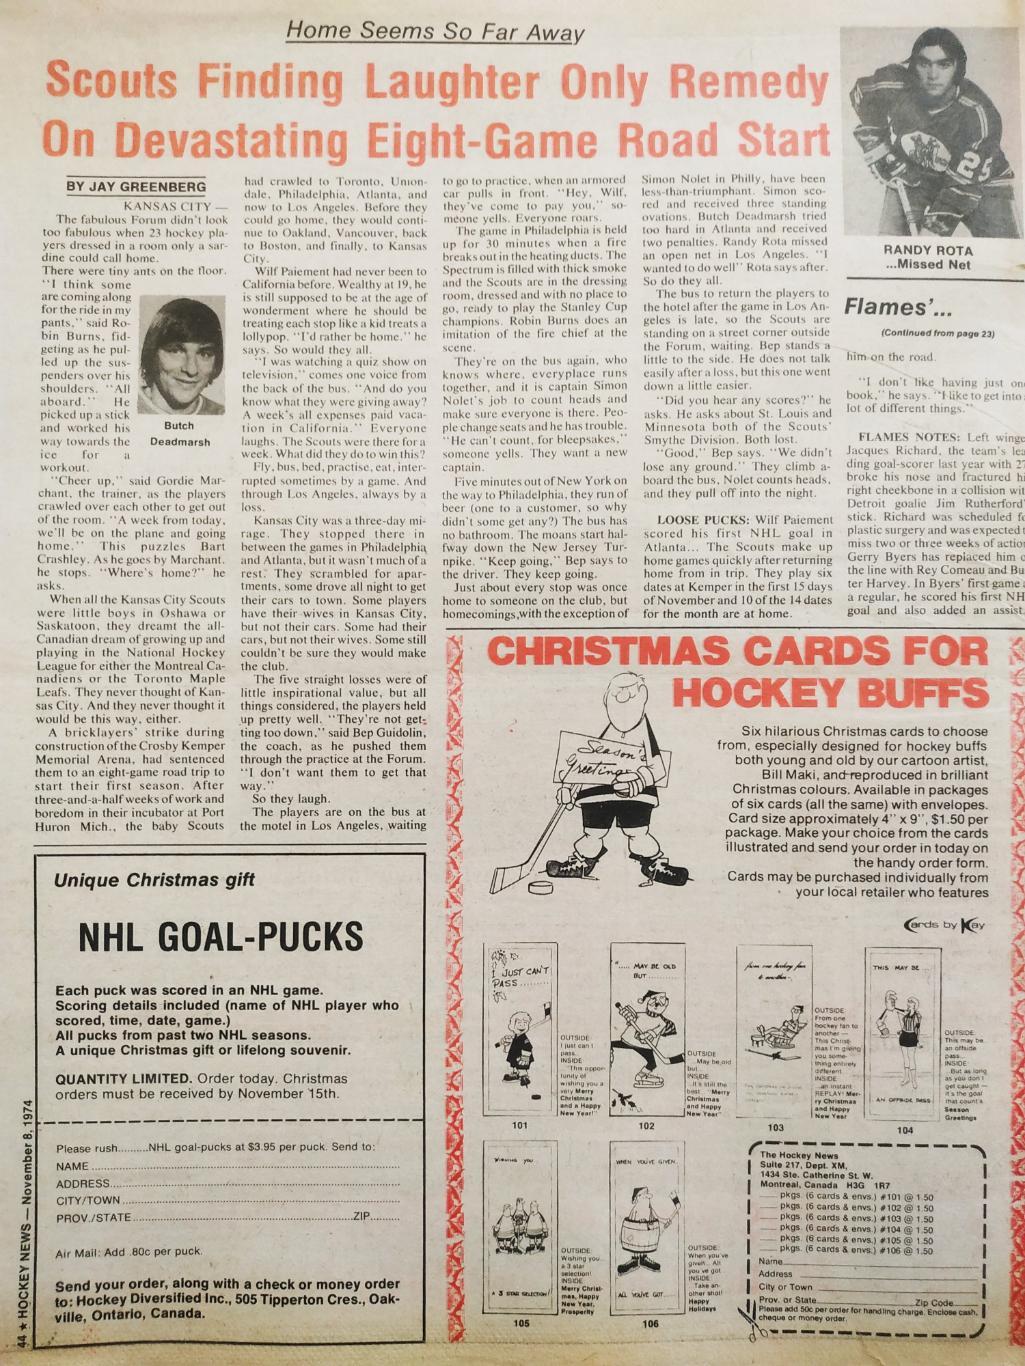 ХОККЕЙ ЖУРНАЛ ЕЖЕНЕДЕЛЬНИК НХЛ НОВОСТИ ХОККЕЯ NOV.8 1974 NHL THE HOCKEY NEWS 7